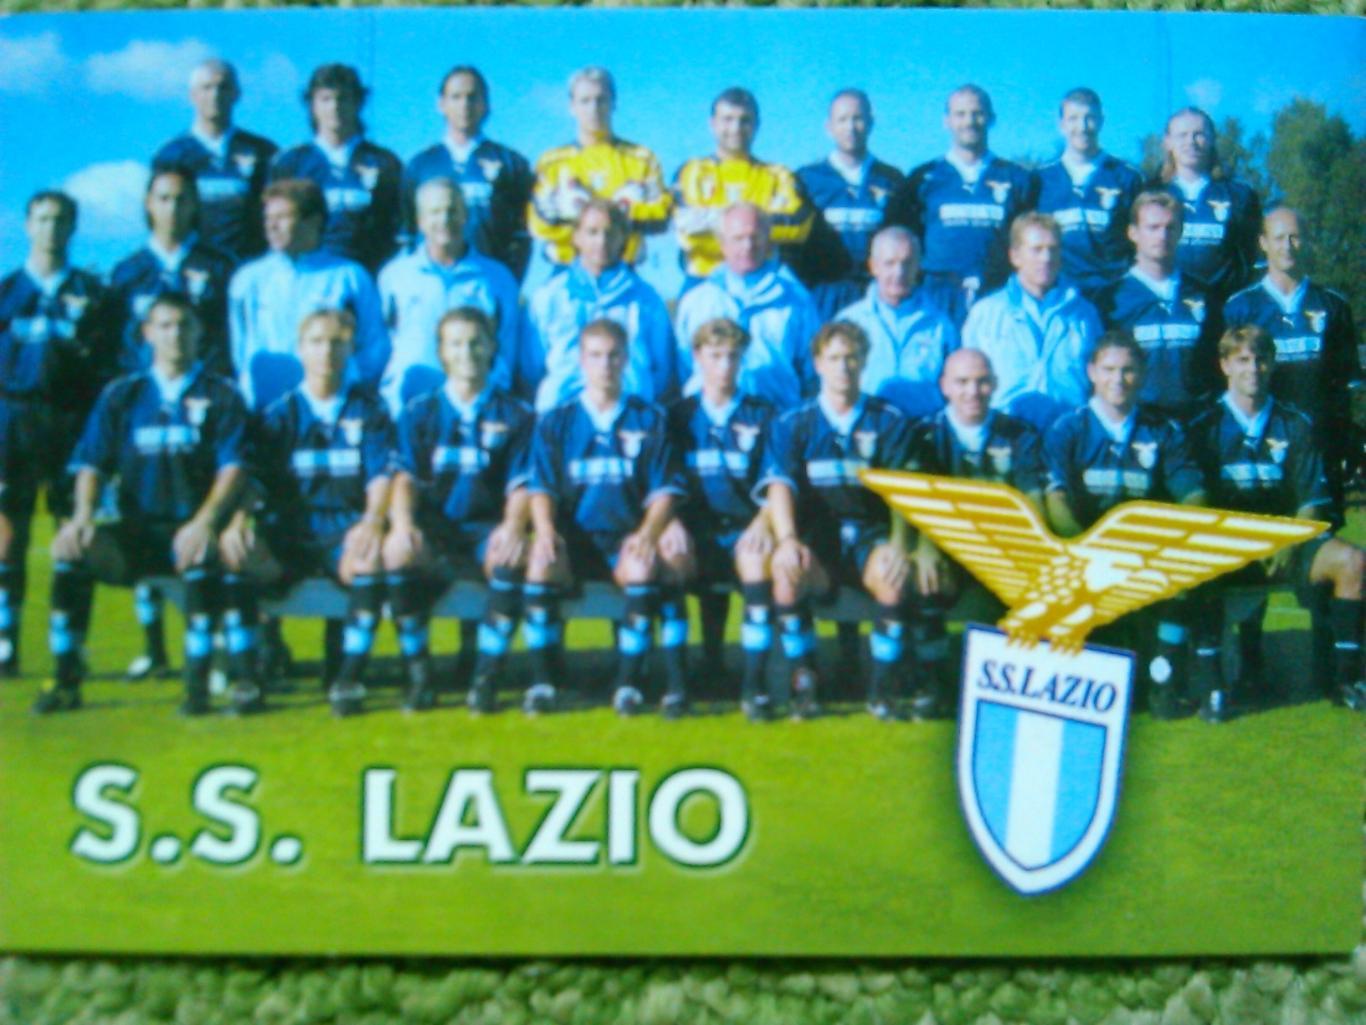 S.S.LAZIO./ЛАЦИО Рим, Италия. календарик 2002. Оптом СКИДКИ до 45%!